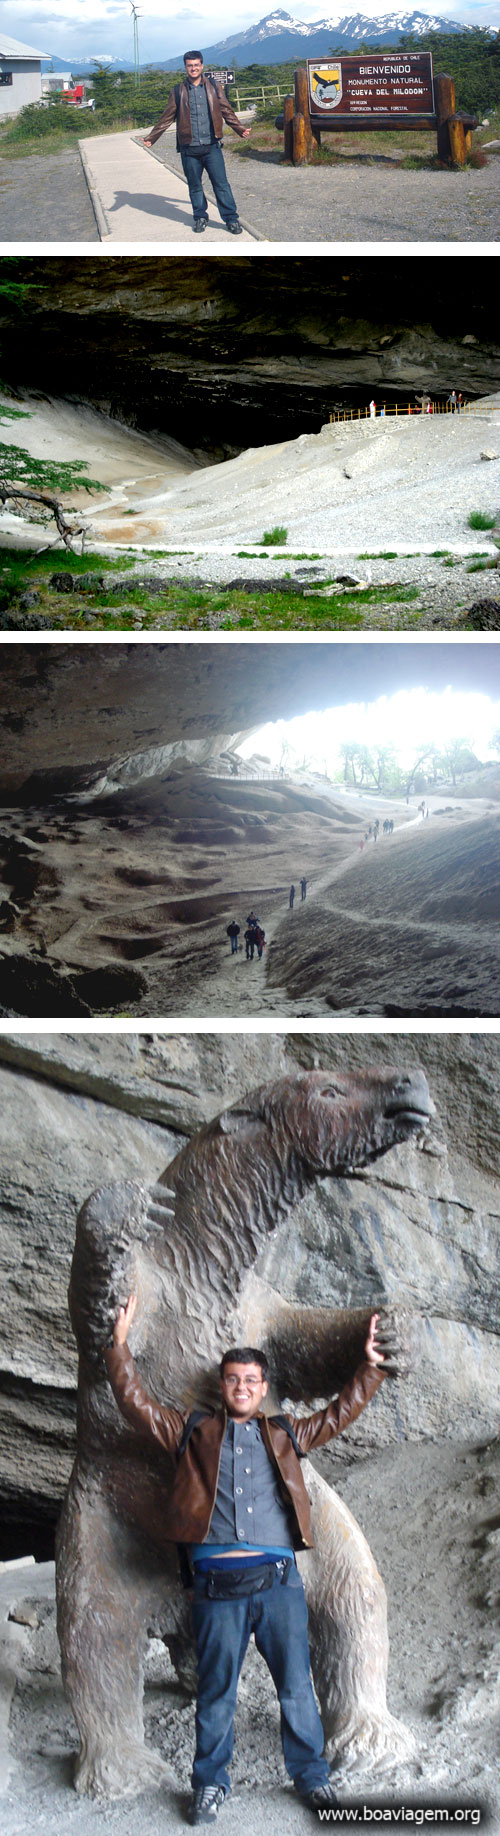 Cueva del Milodon - Cova da Preguiça em Puerto Natales